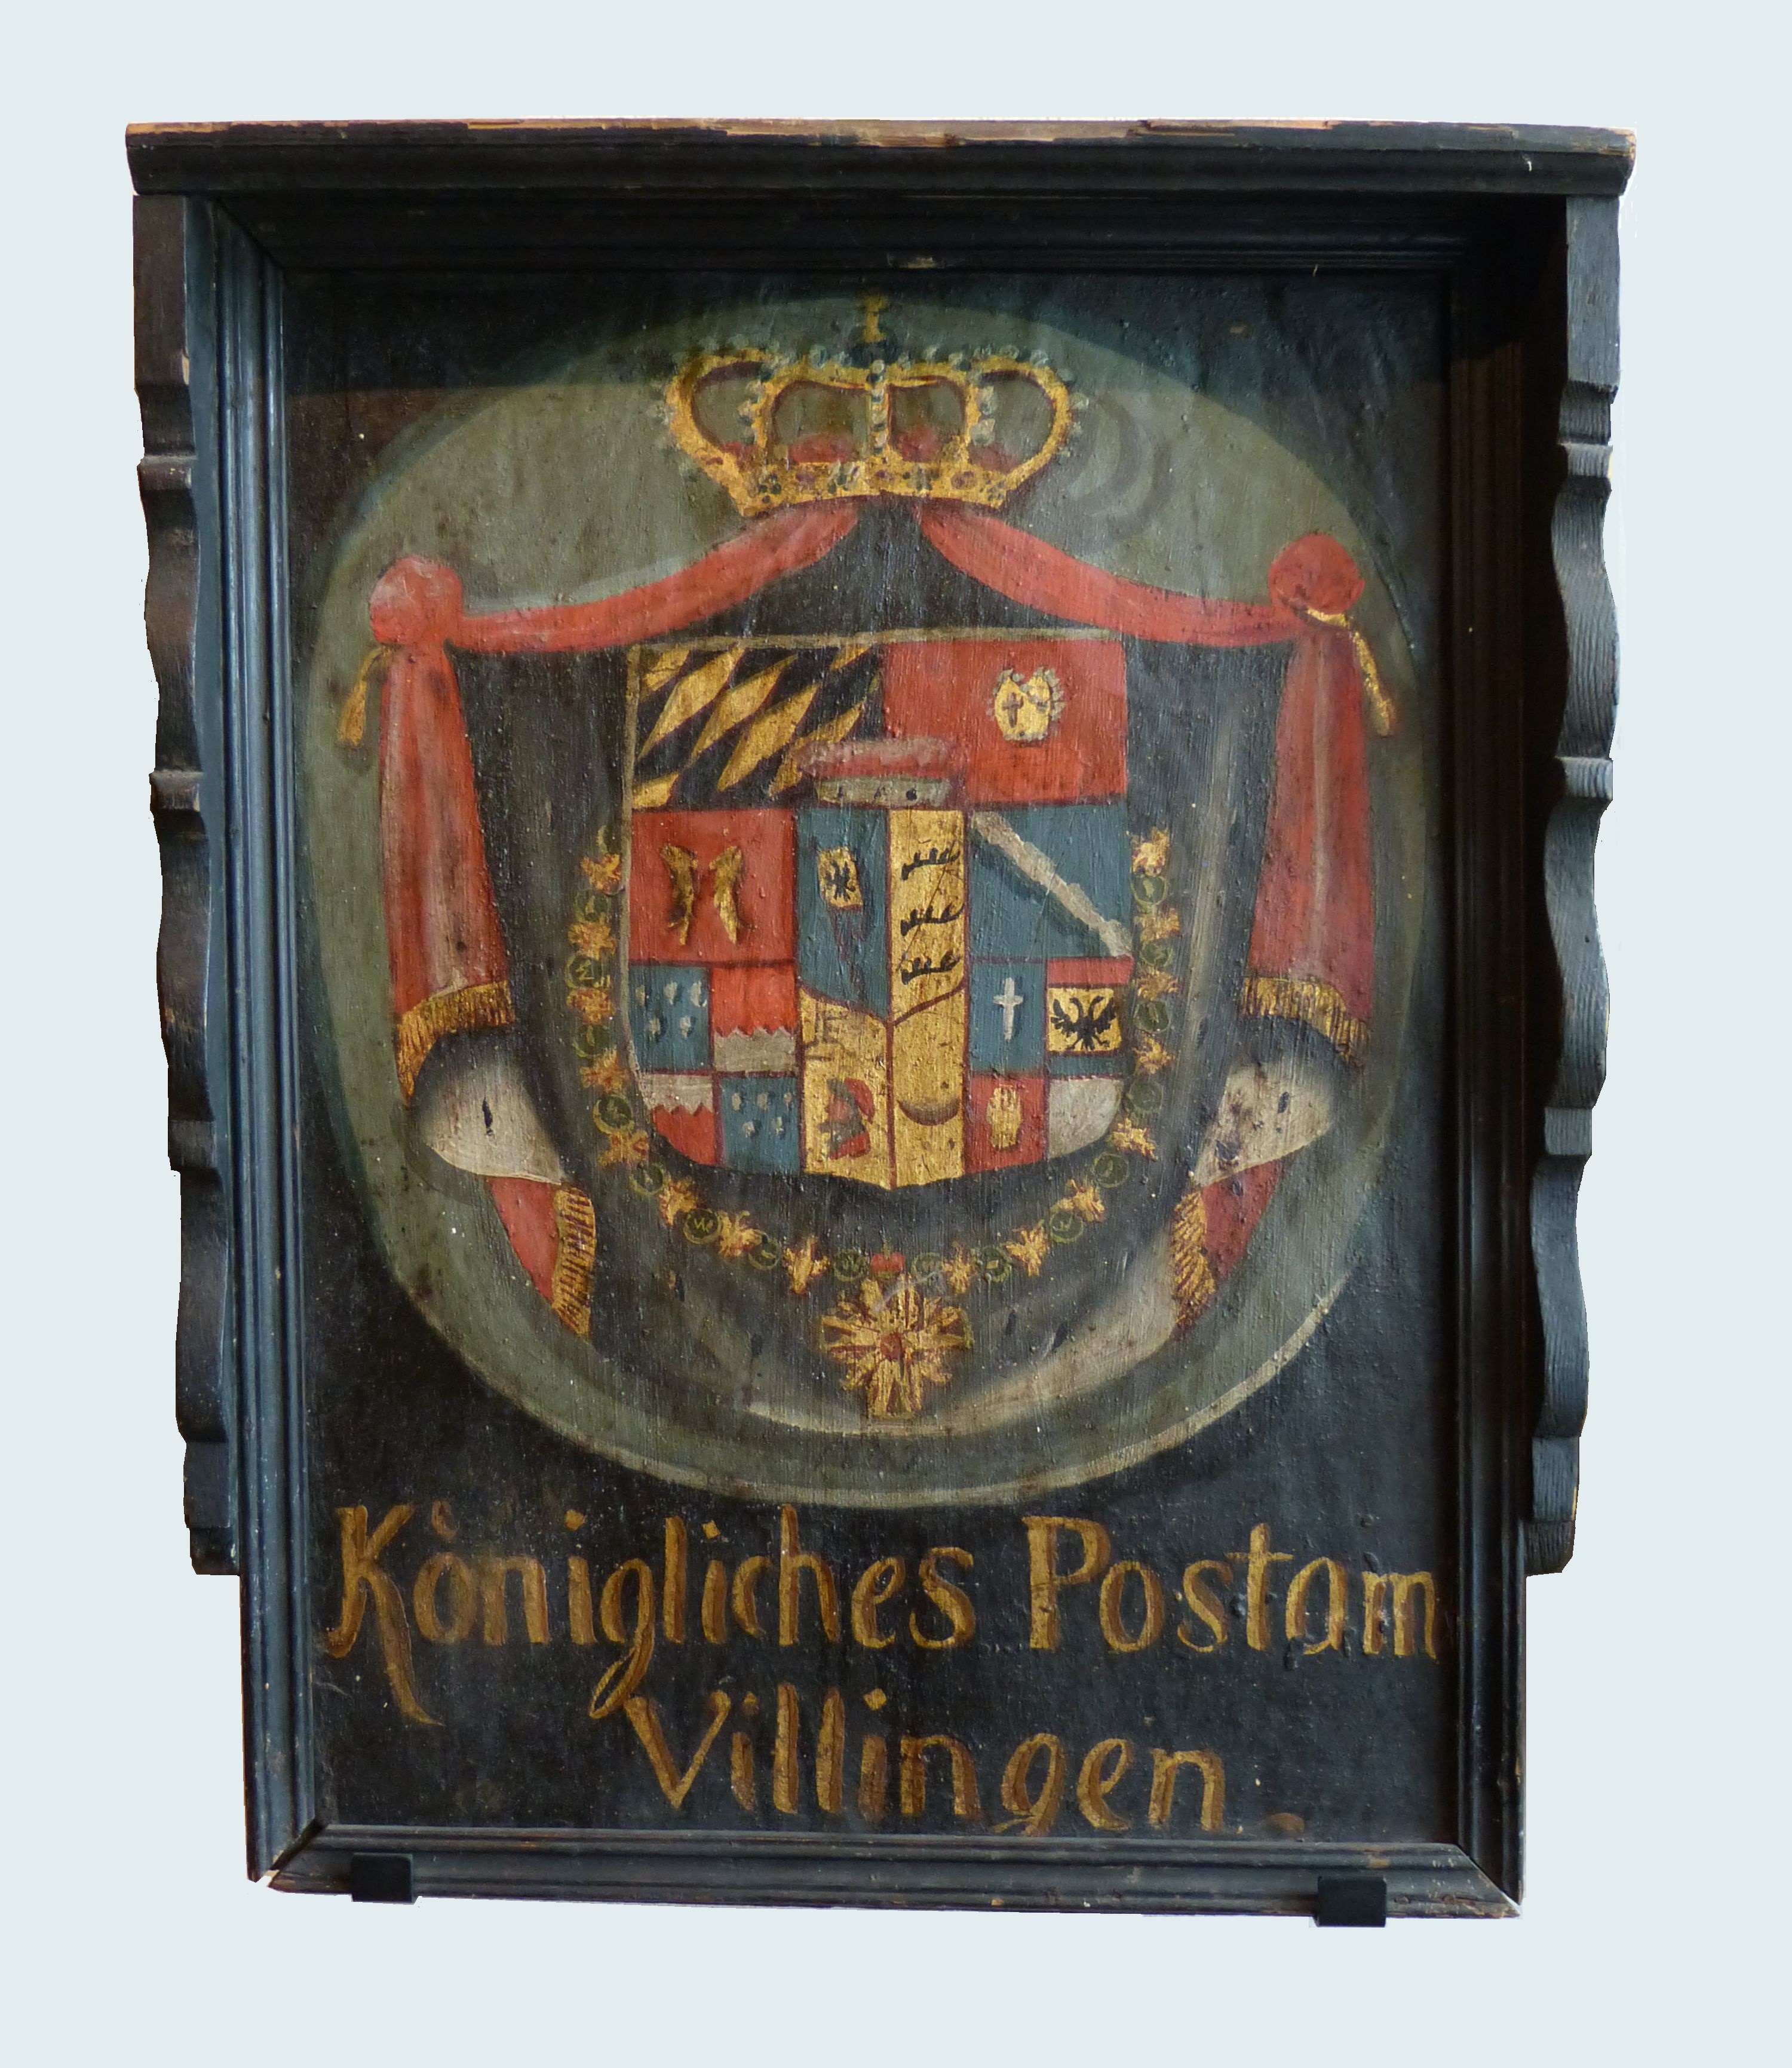 Königlich Württembergisches Postamt Villingen (Franziskanermuseum Villingen-Schwenningen CC BY)